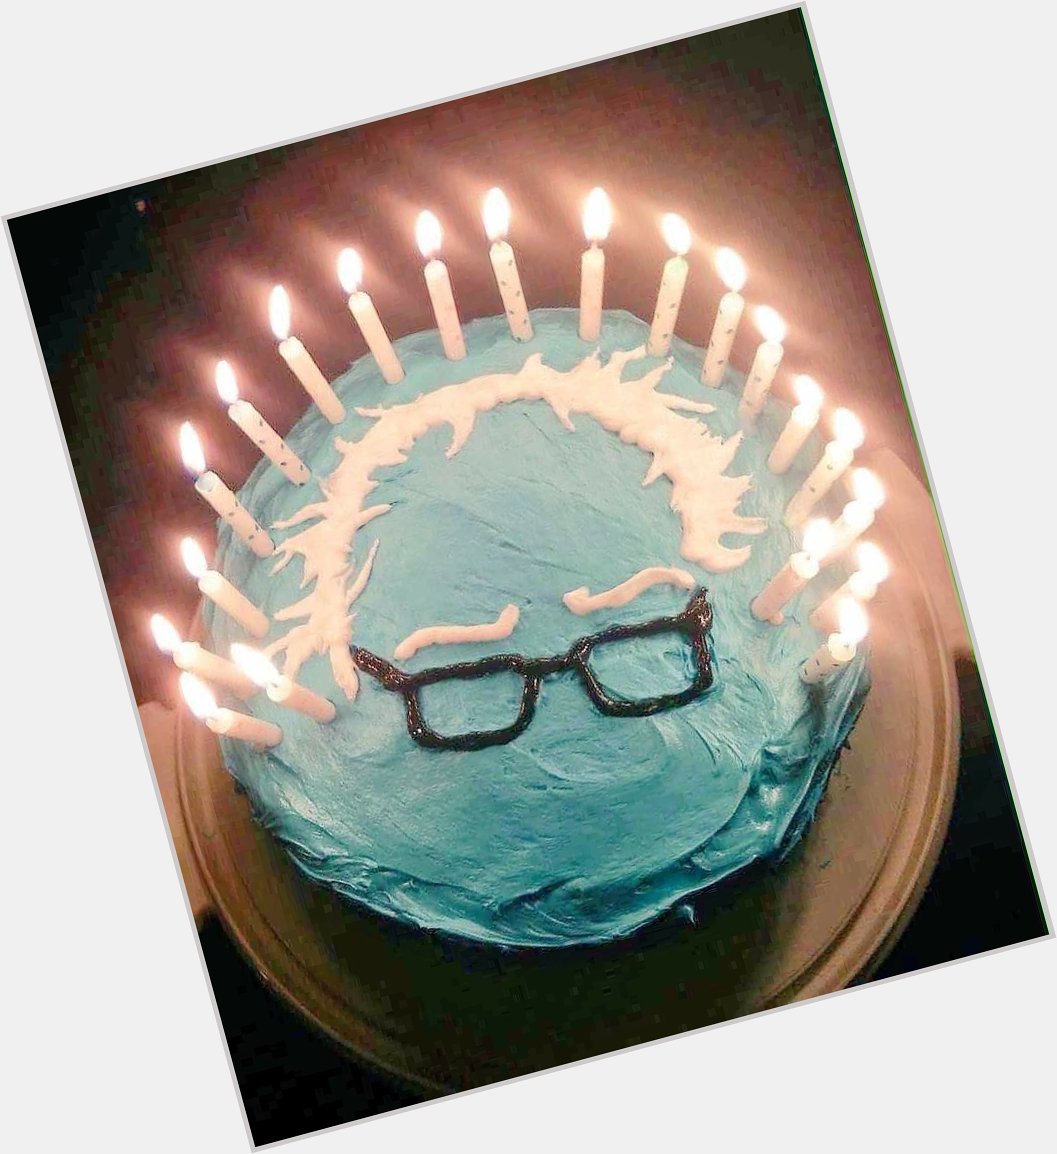 Its Bernie Sanders Birthday 
Happy Birthday Bernie 